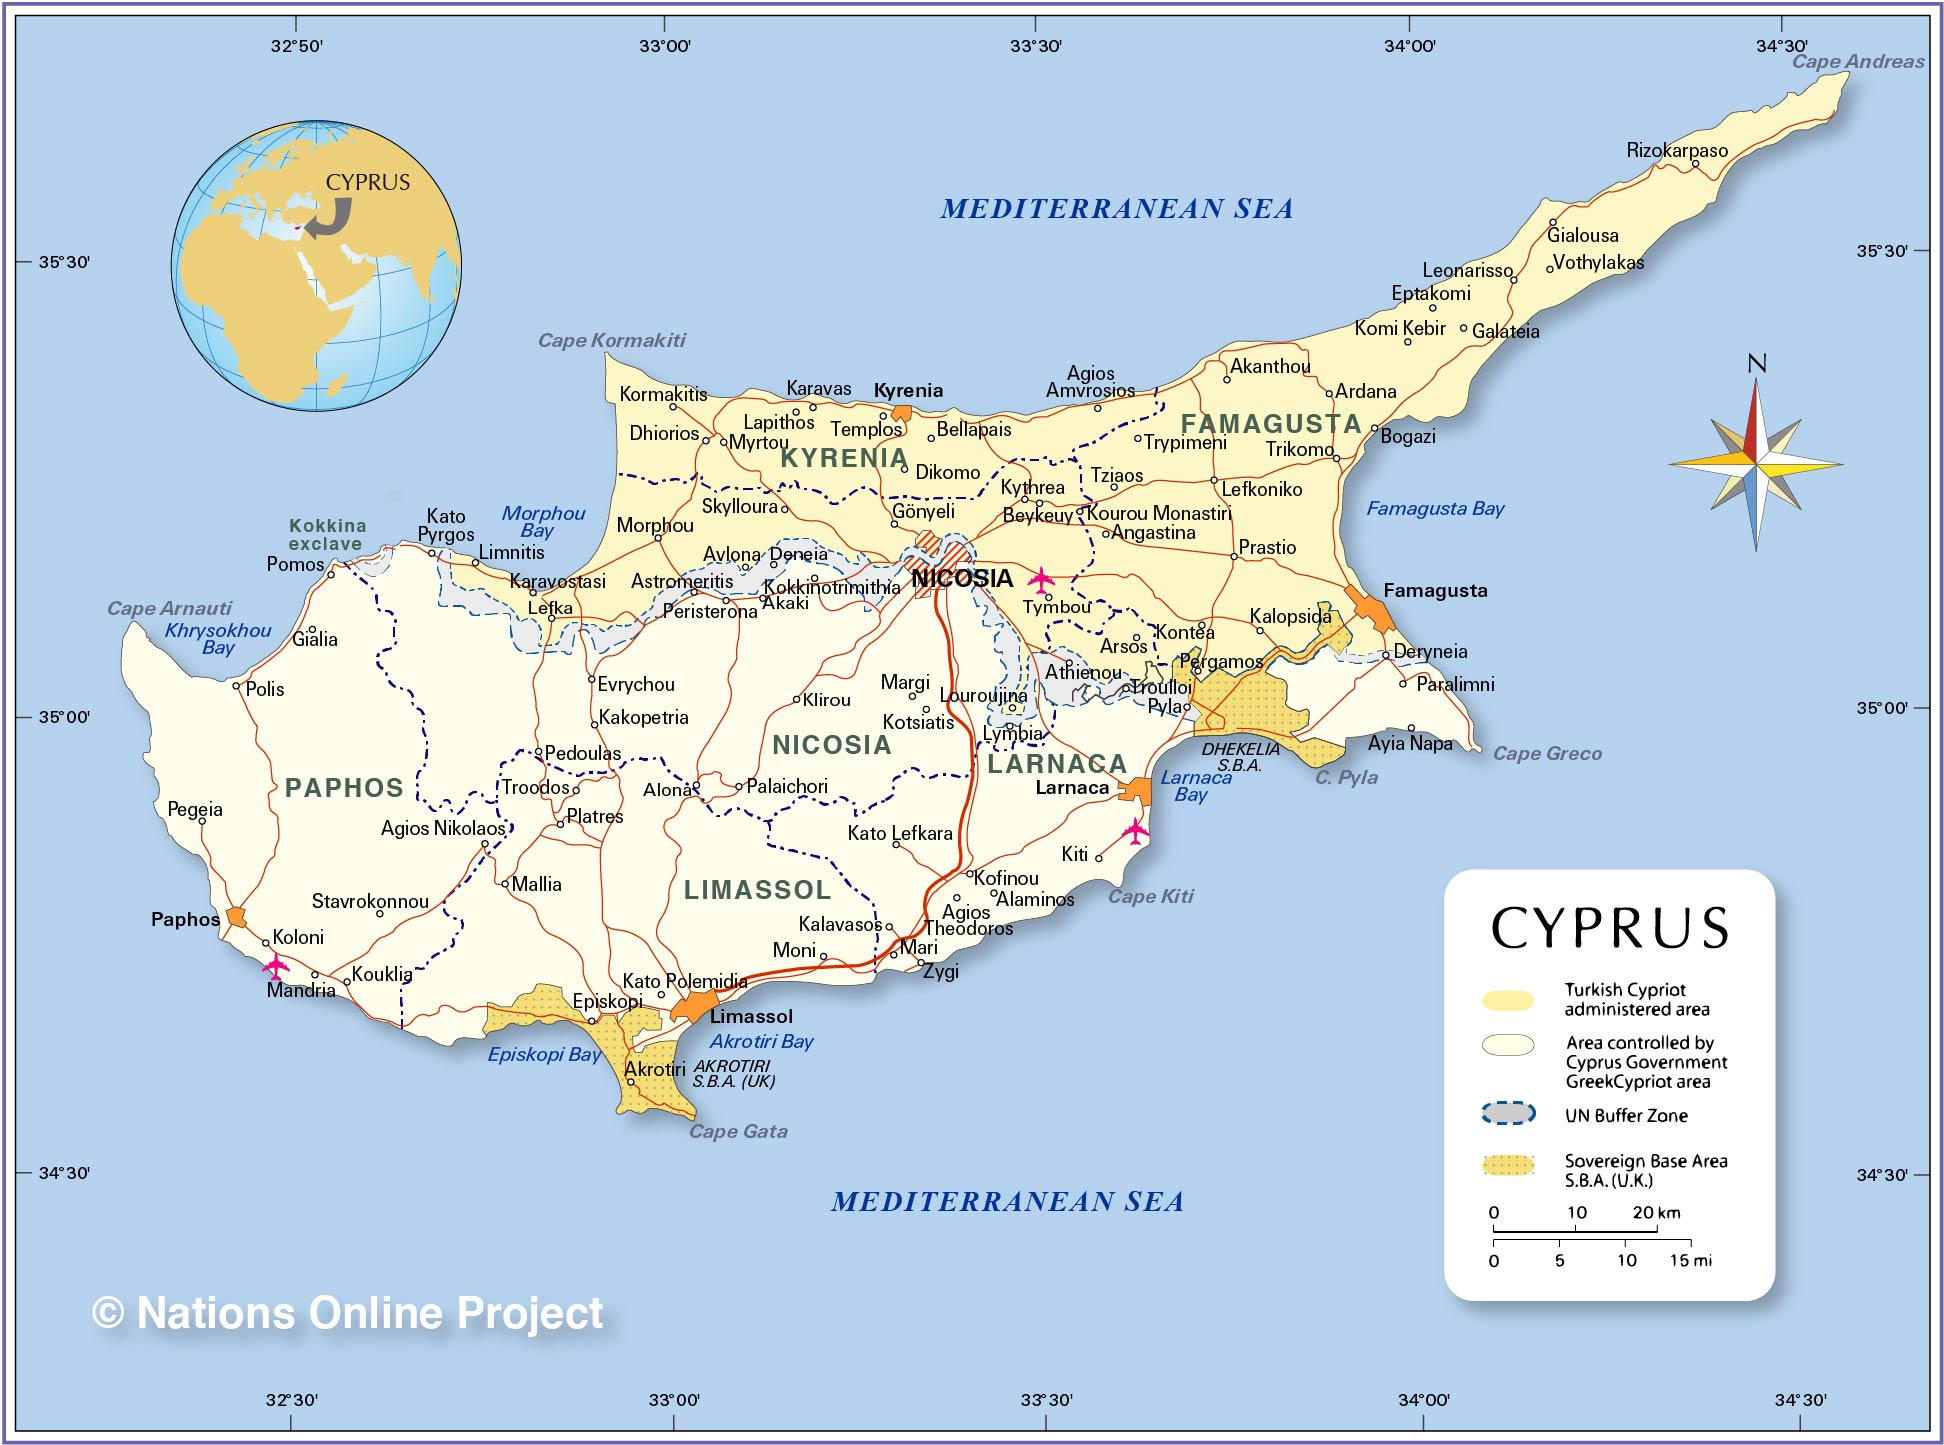 Khám phá đất nước Cyprus với bản đồ mới nhất năm 2024 - một đất nước có vị trí địa lý độc đáo và vô cùng quyến rũ. Với những khu vực đầy lịch sử, văn hóa và phong cảnh đẹp mê hồn, bạn sẽ không bao giờ hối tiếc khi đặt chân đến nơi này.